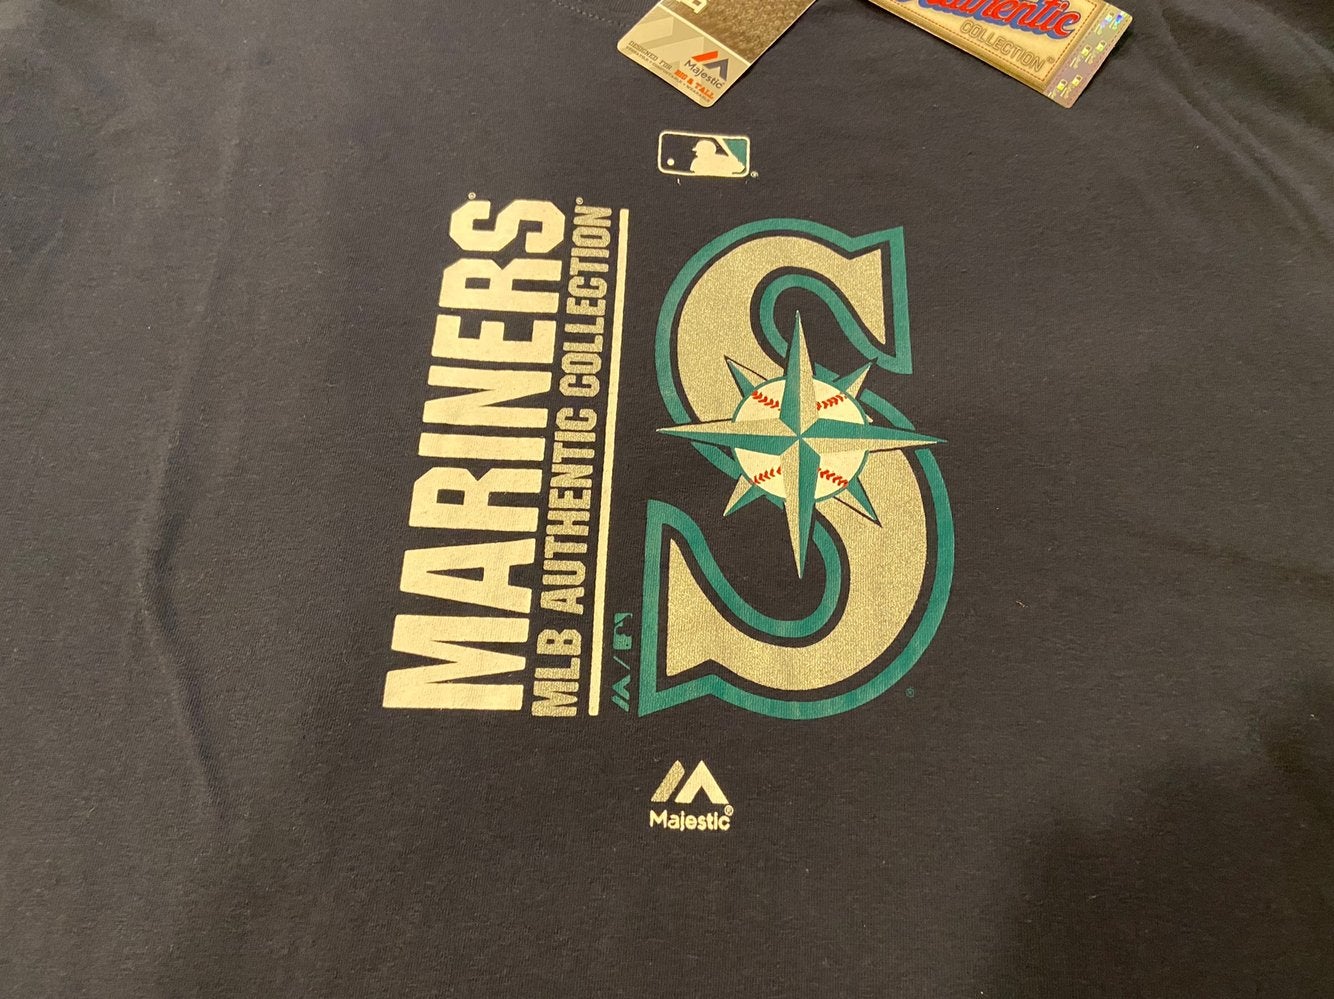 Seattle Mariners Ken Griffey Jr. MLB BASEBALL REVERSE TIE DYE Size 3XL T  Shirt! | SidelineSwap